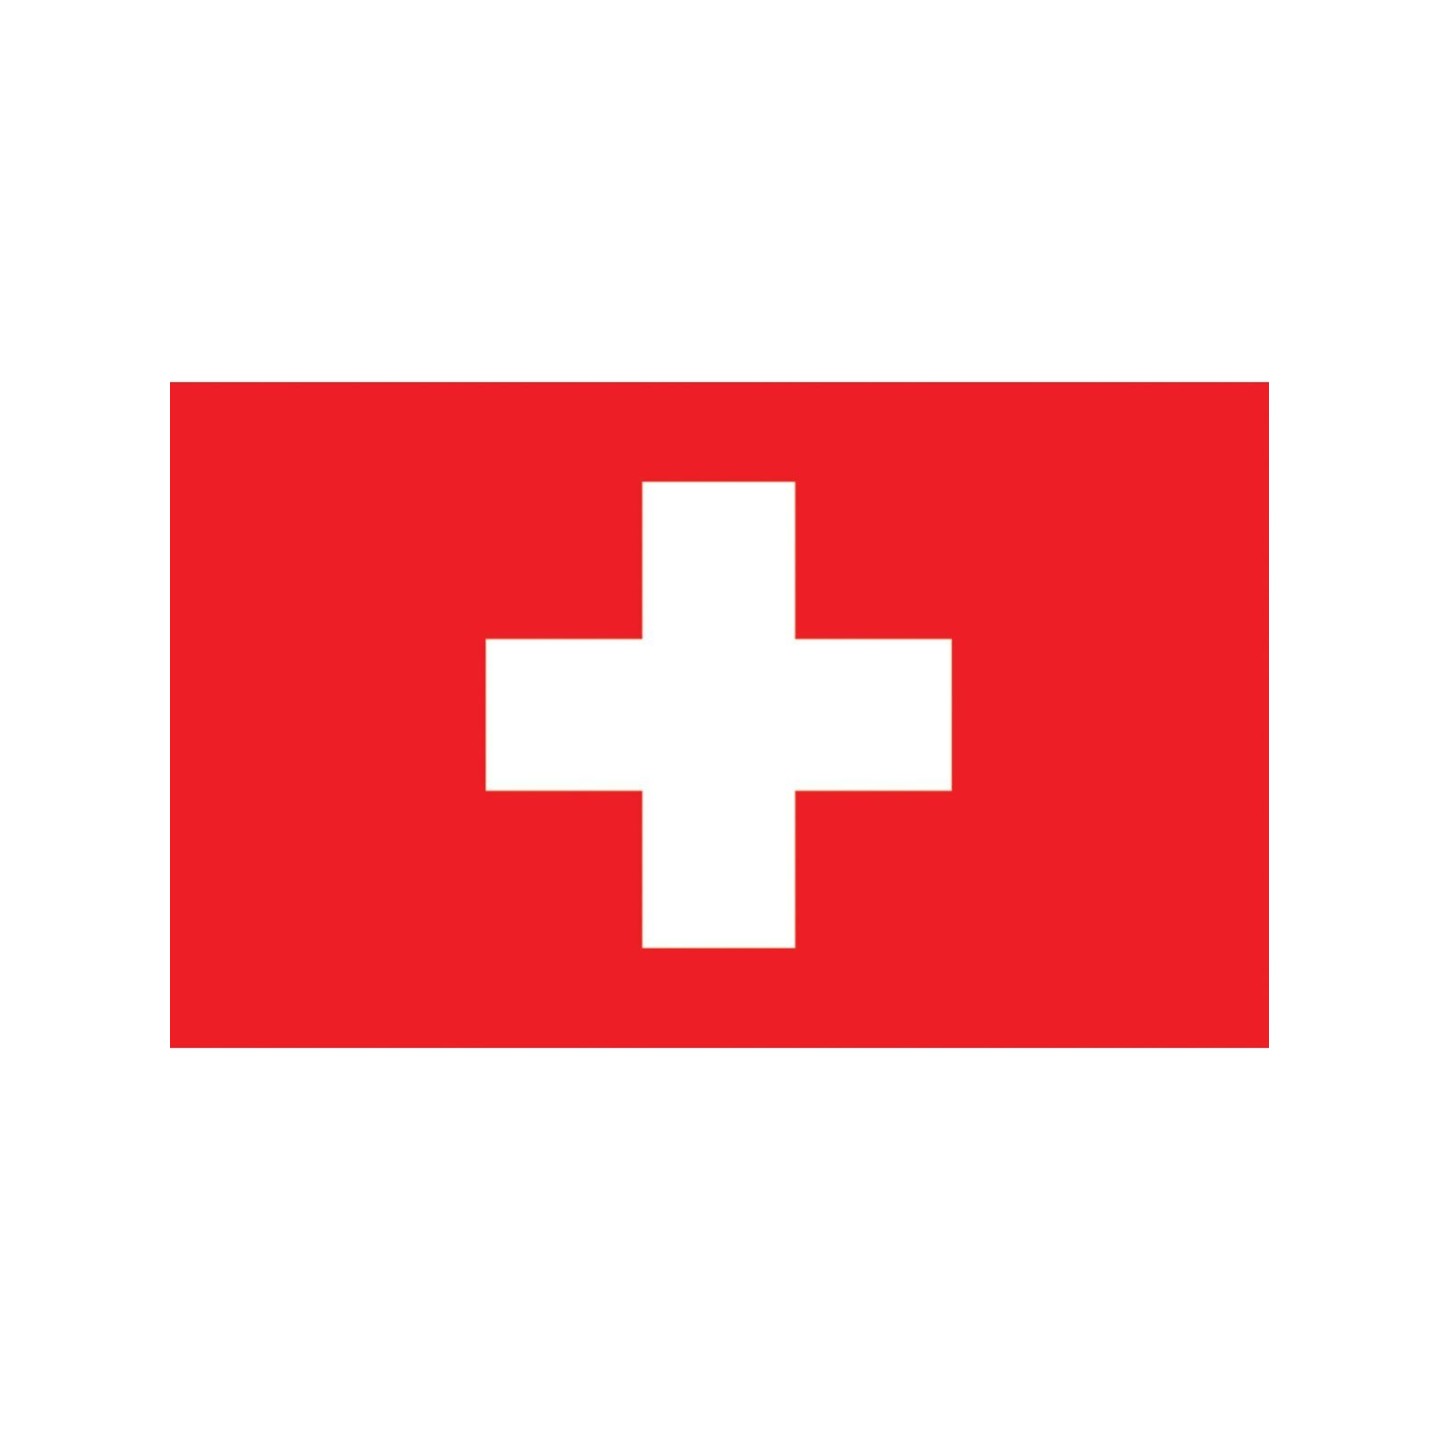 zwitserse vlag kopen